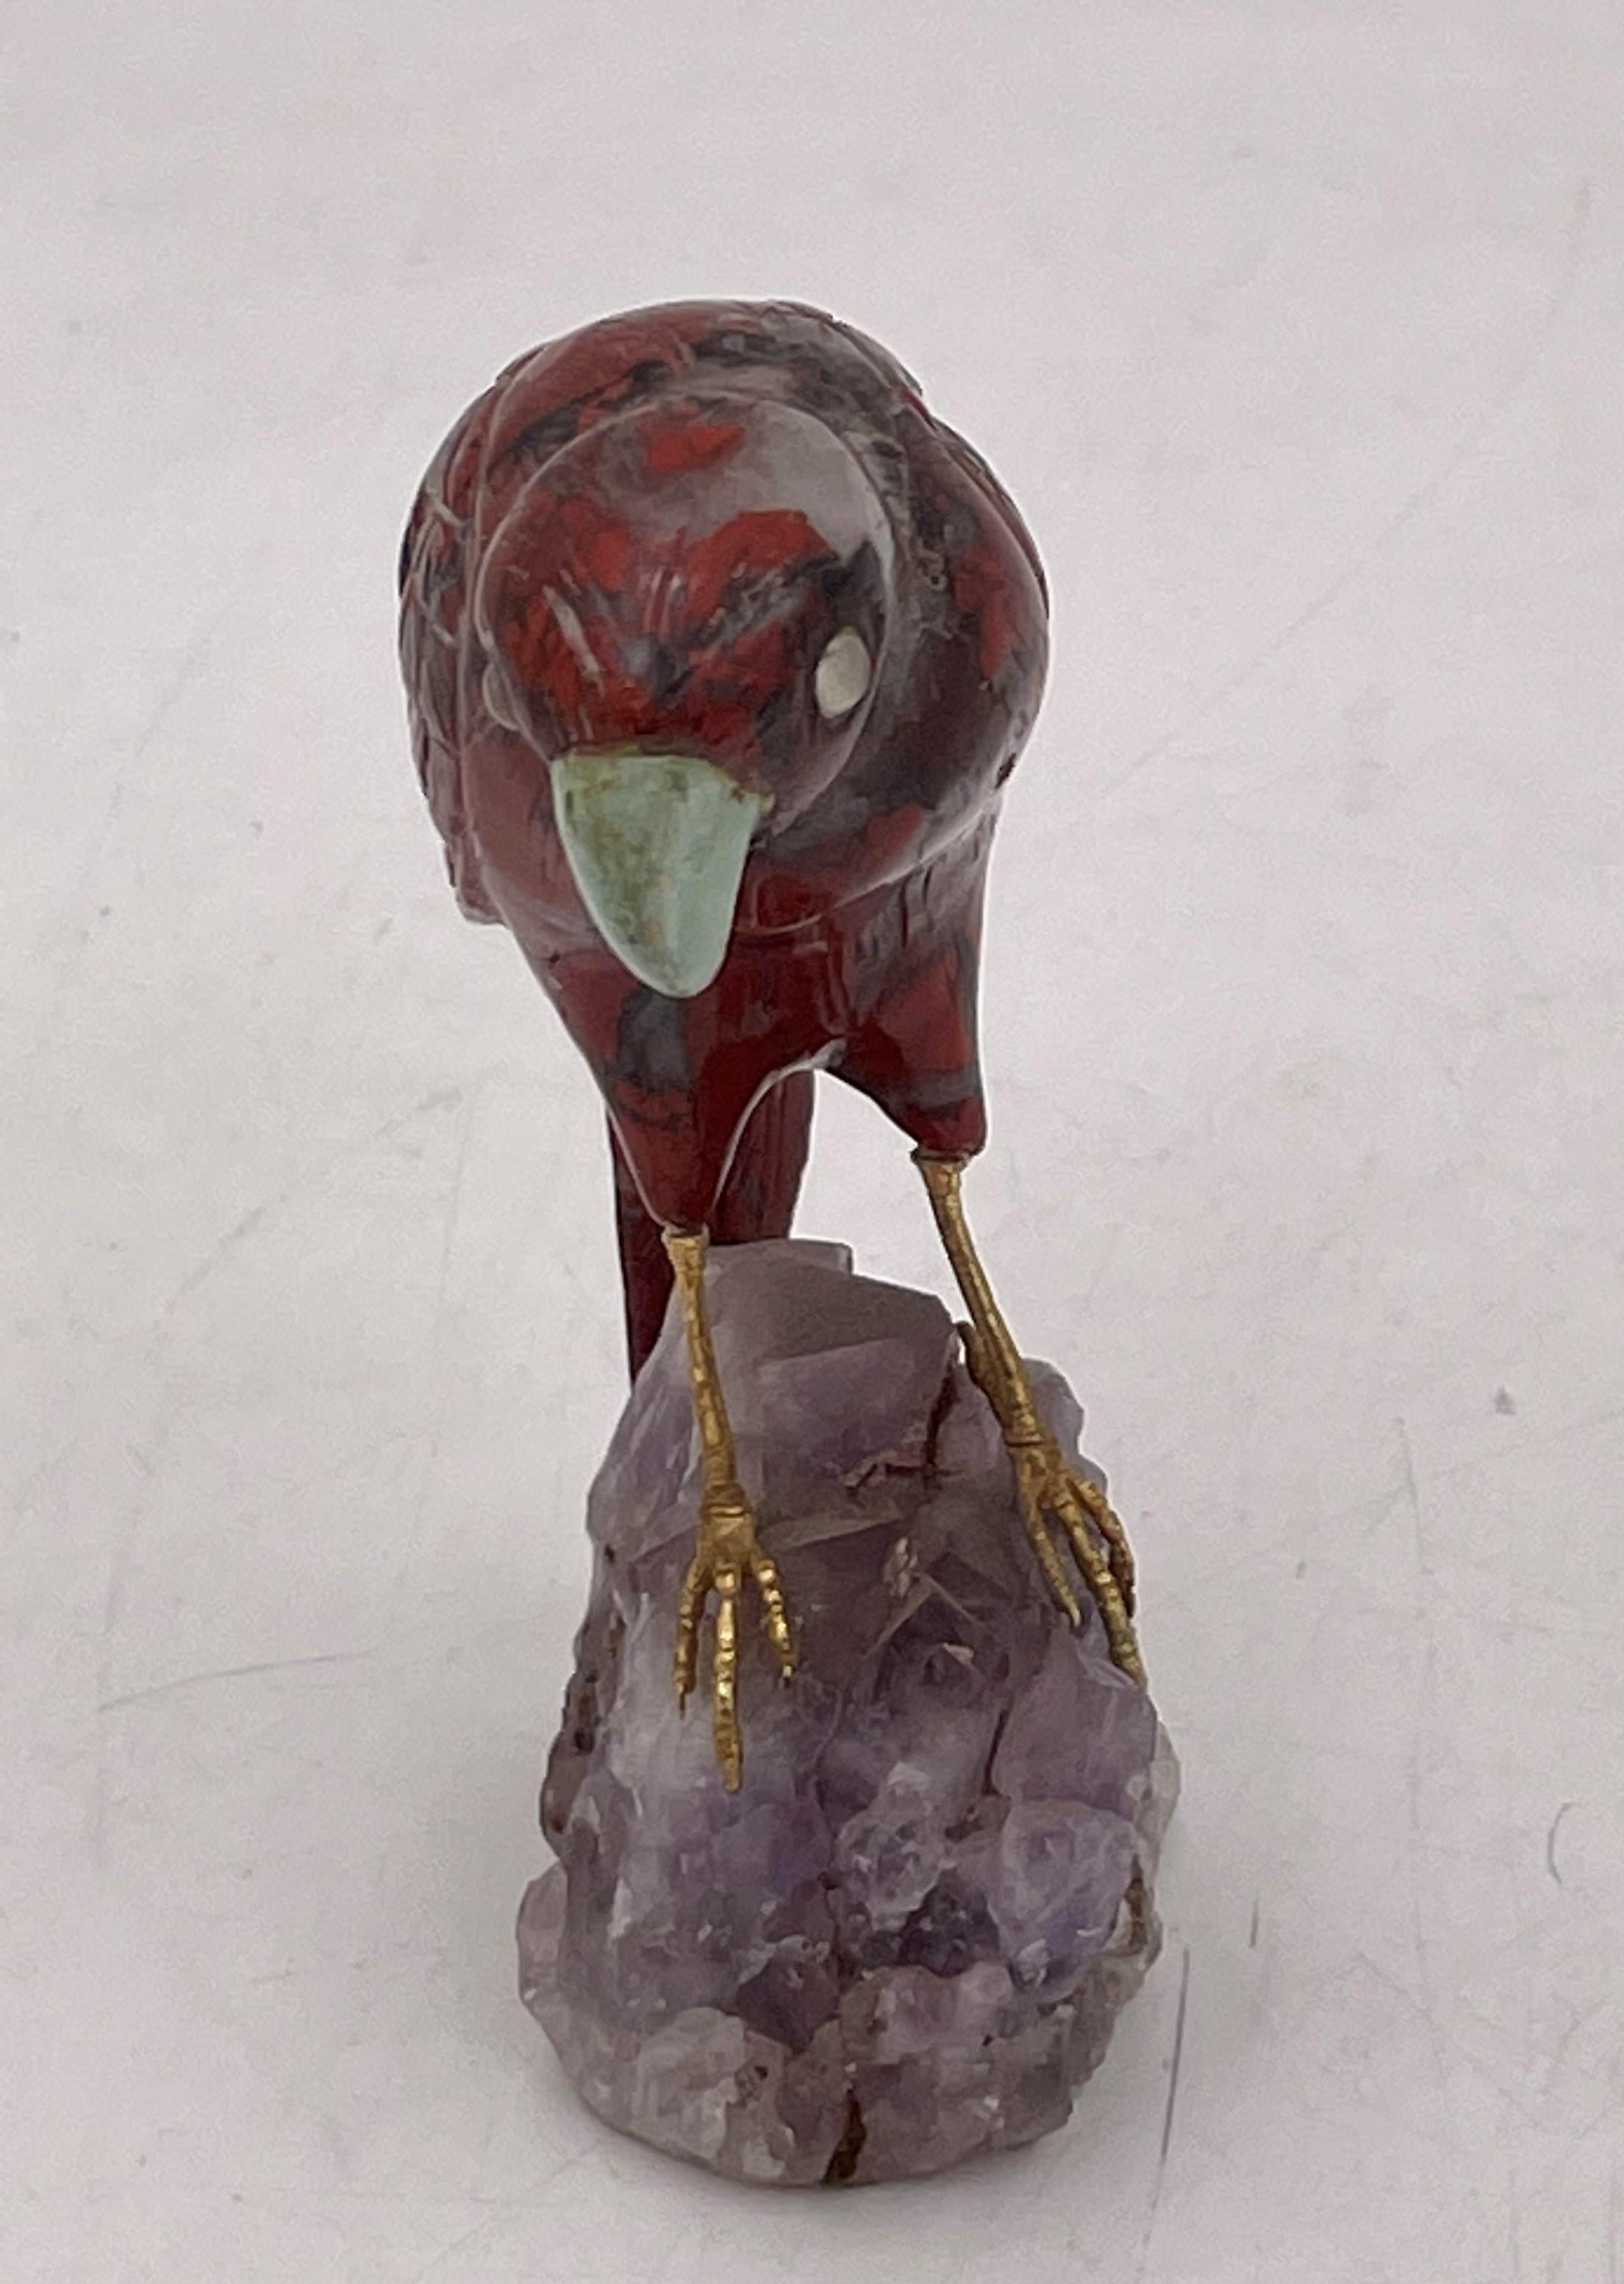 Sehr realistische und detaillierte Skulptur eines Vogels mit vergoldeten Silberbeinen, der auf einem Amethystsockel thront. Dieses schöne Stück misst 3 7/8'' in der Höhe, 2 3/4'' in der Tiefe und 1 1/2'' in der Breite.

Bitte zögern Sie nicht, uns